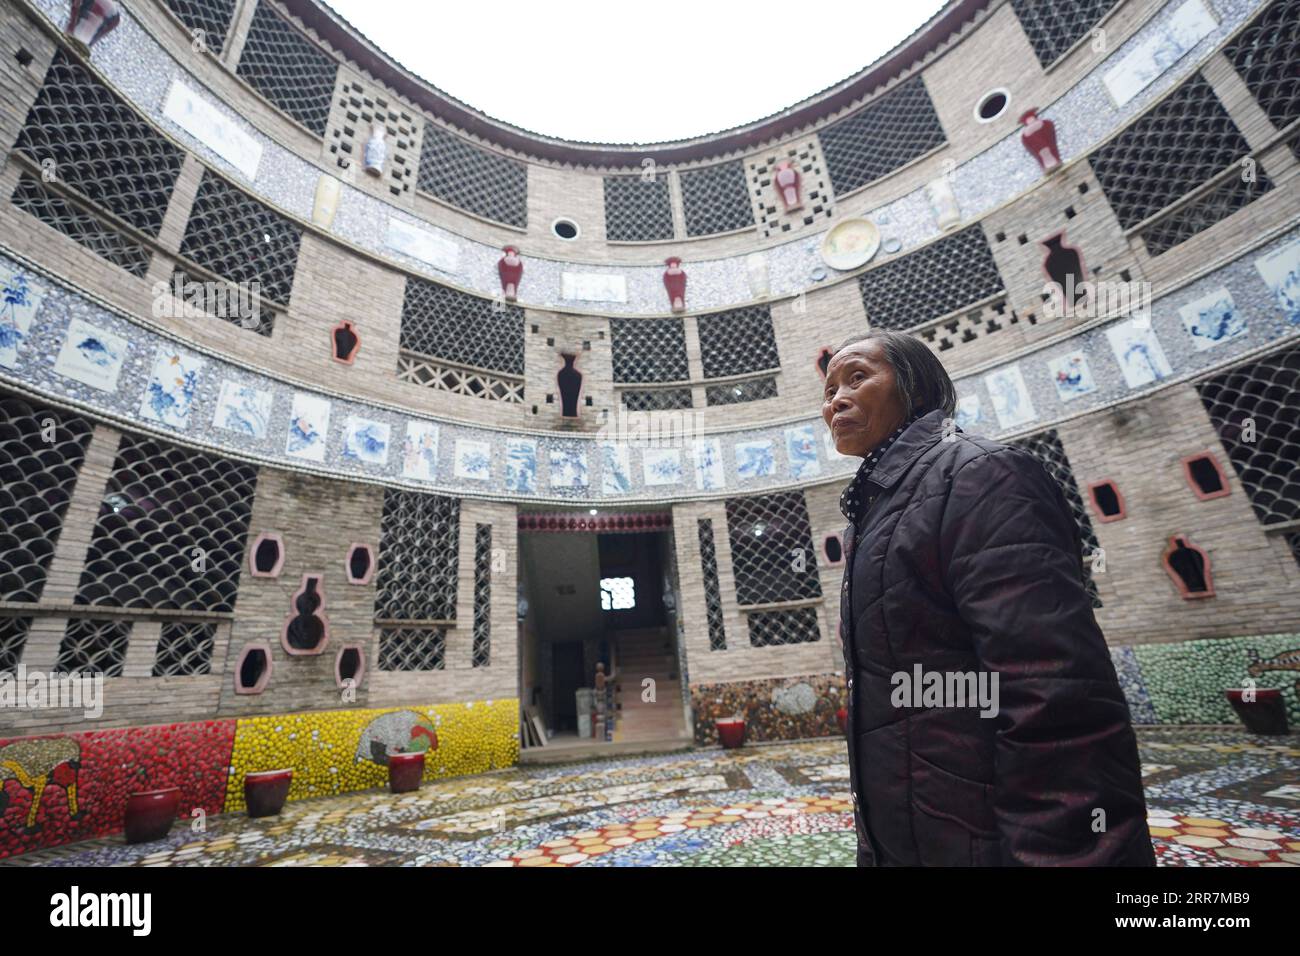 210331 -- NANCHANG, le 31 mars 2021 -- Yu Ermei présente son palais de porcelaine aux visiteurs du village de Xinping du comté de Fuliang à Jingdezhen, dans la province de Jiangxi dans l'est de la Chine, le 19 mars 2021. Yu Ermei, une villageoise de 91 ans qui travaillait autrefois dans une manufacture de porcelaine, a commencé à construire ses palais de porcelaine dans le village de Xinping à partir de 2011. Grâce à ses efforts, quatre bâtiments décorés de porcelaine et de pièces de porcelaine se dressent maintenant dans le village, attirant de nombreux touristes à visiter. CHINE-JIANGXI-JINGDEZHEN-PORCELAINE PALACESCN ZhouxMi PUBLICATIONxNOTxINxCHN Banque D'Images